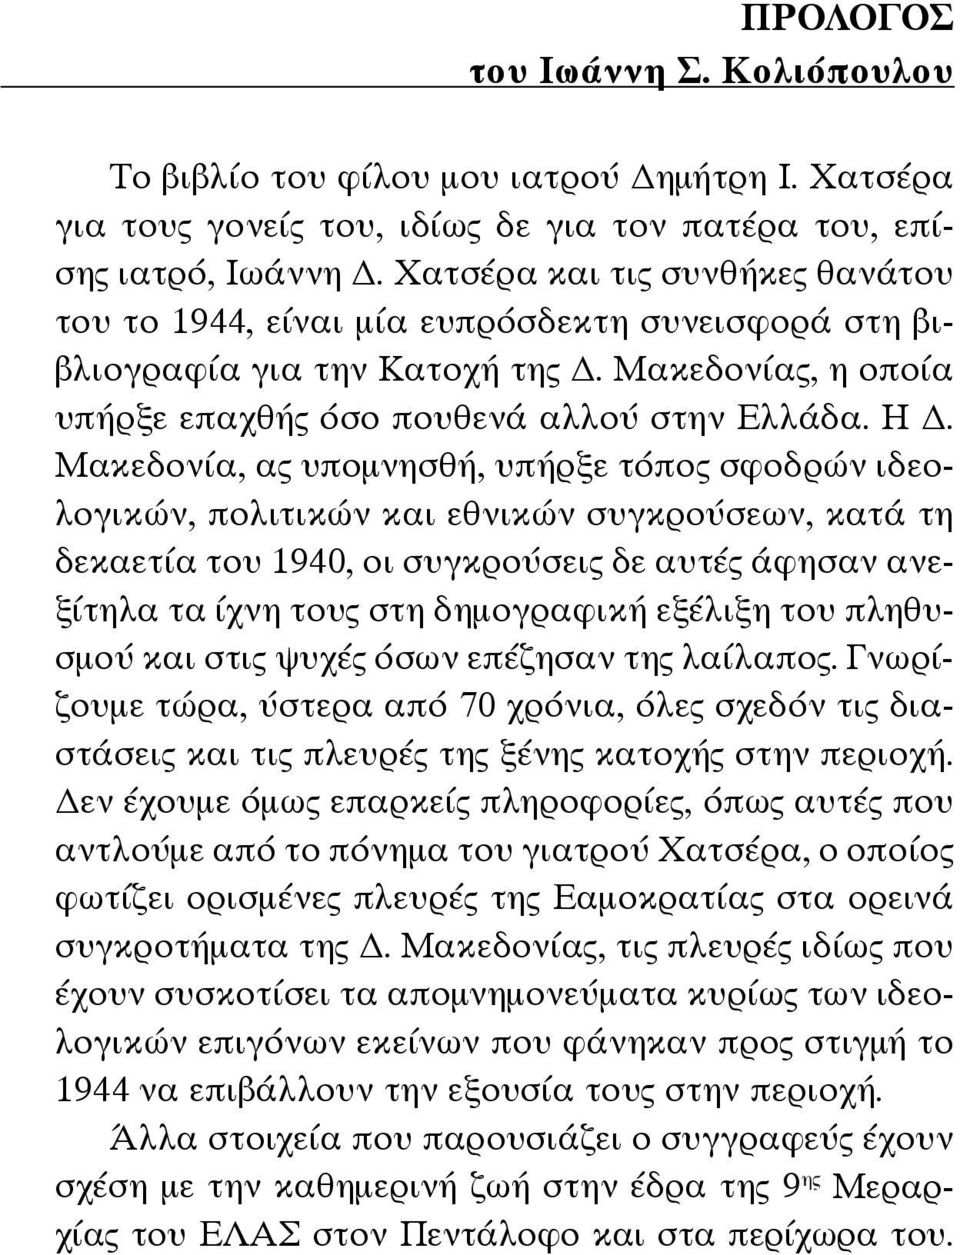 Μακεδονία, ας υπομνησθή, υπήρξε τόπος σφοδρών ιδεολογικών, πολιτικών και εθνικών συγκρούσεων, κατά τη δεκαετία του 1940, οι συγκρούσεις δε αυτές άφησαν ανεξίτηλα τα ίχνη τους στη δημογραφική εξέλιξη